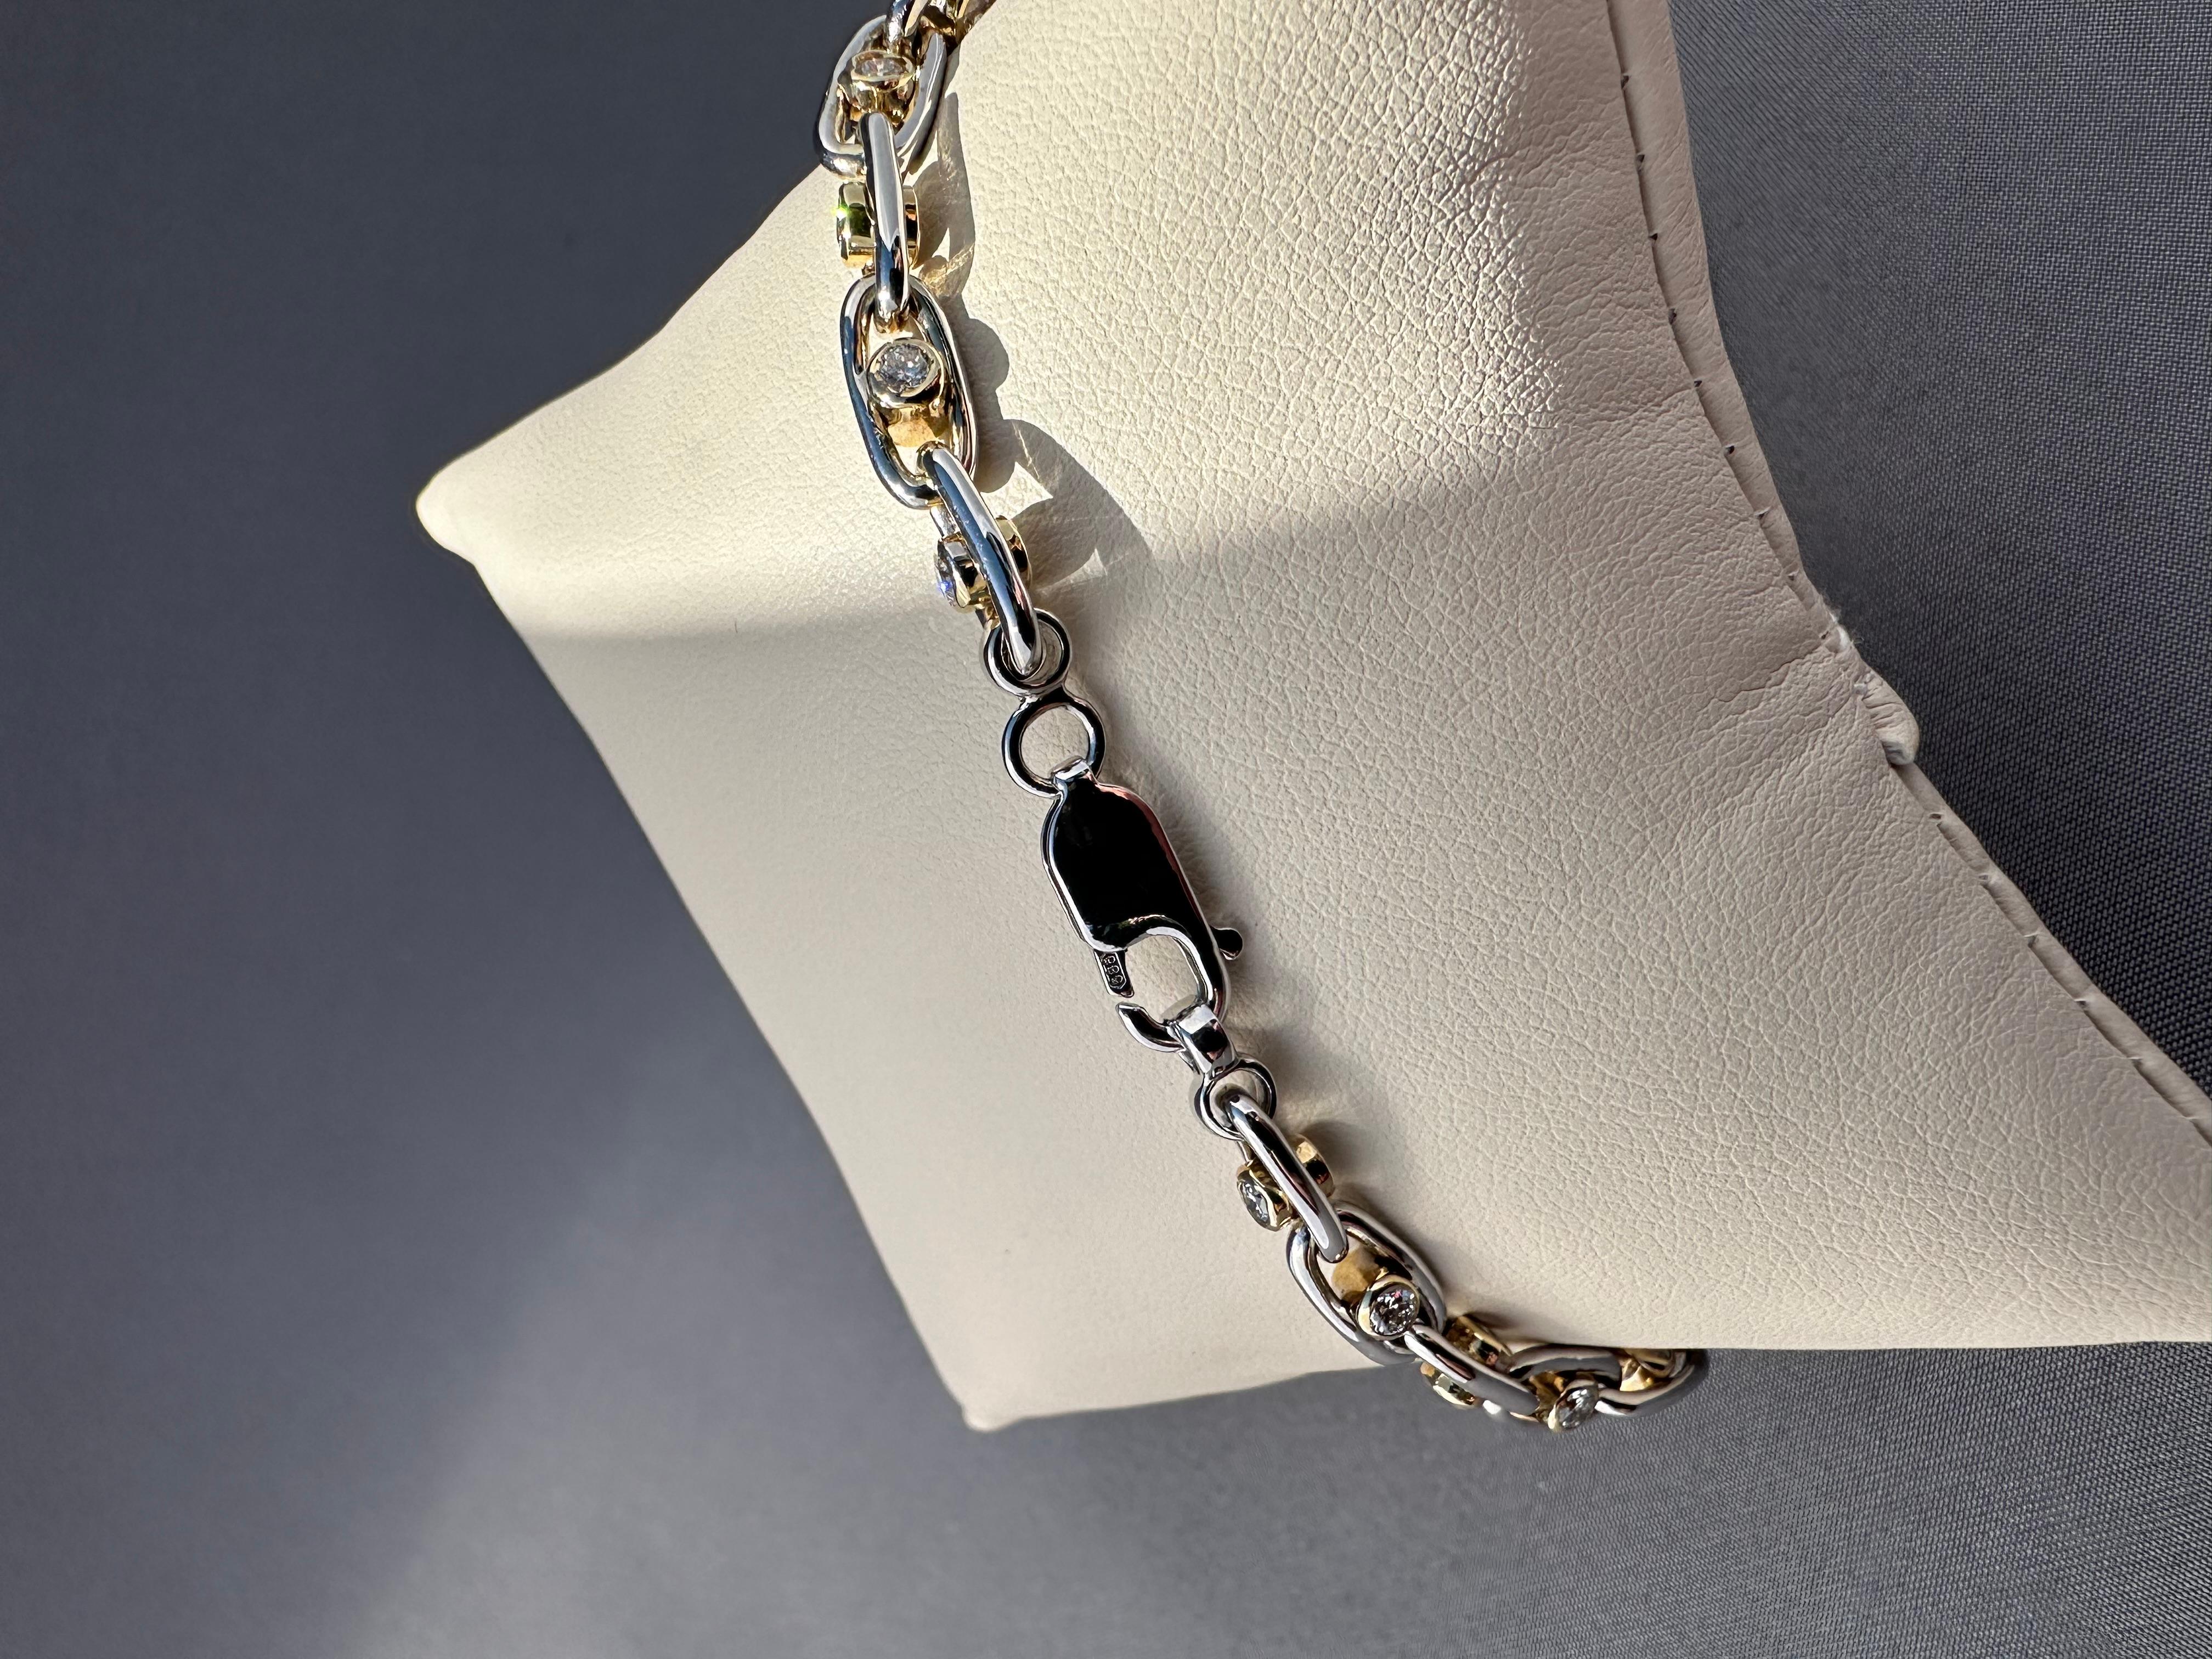 Taille brillant Bracelet tennis flottant en diamants de 3,00 carats TW, or jaune/blanc 14 carats fabriqué sur mesure en vente